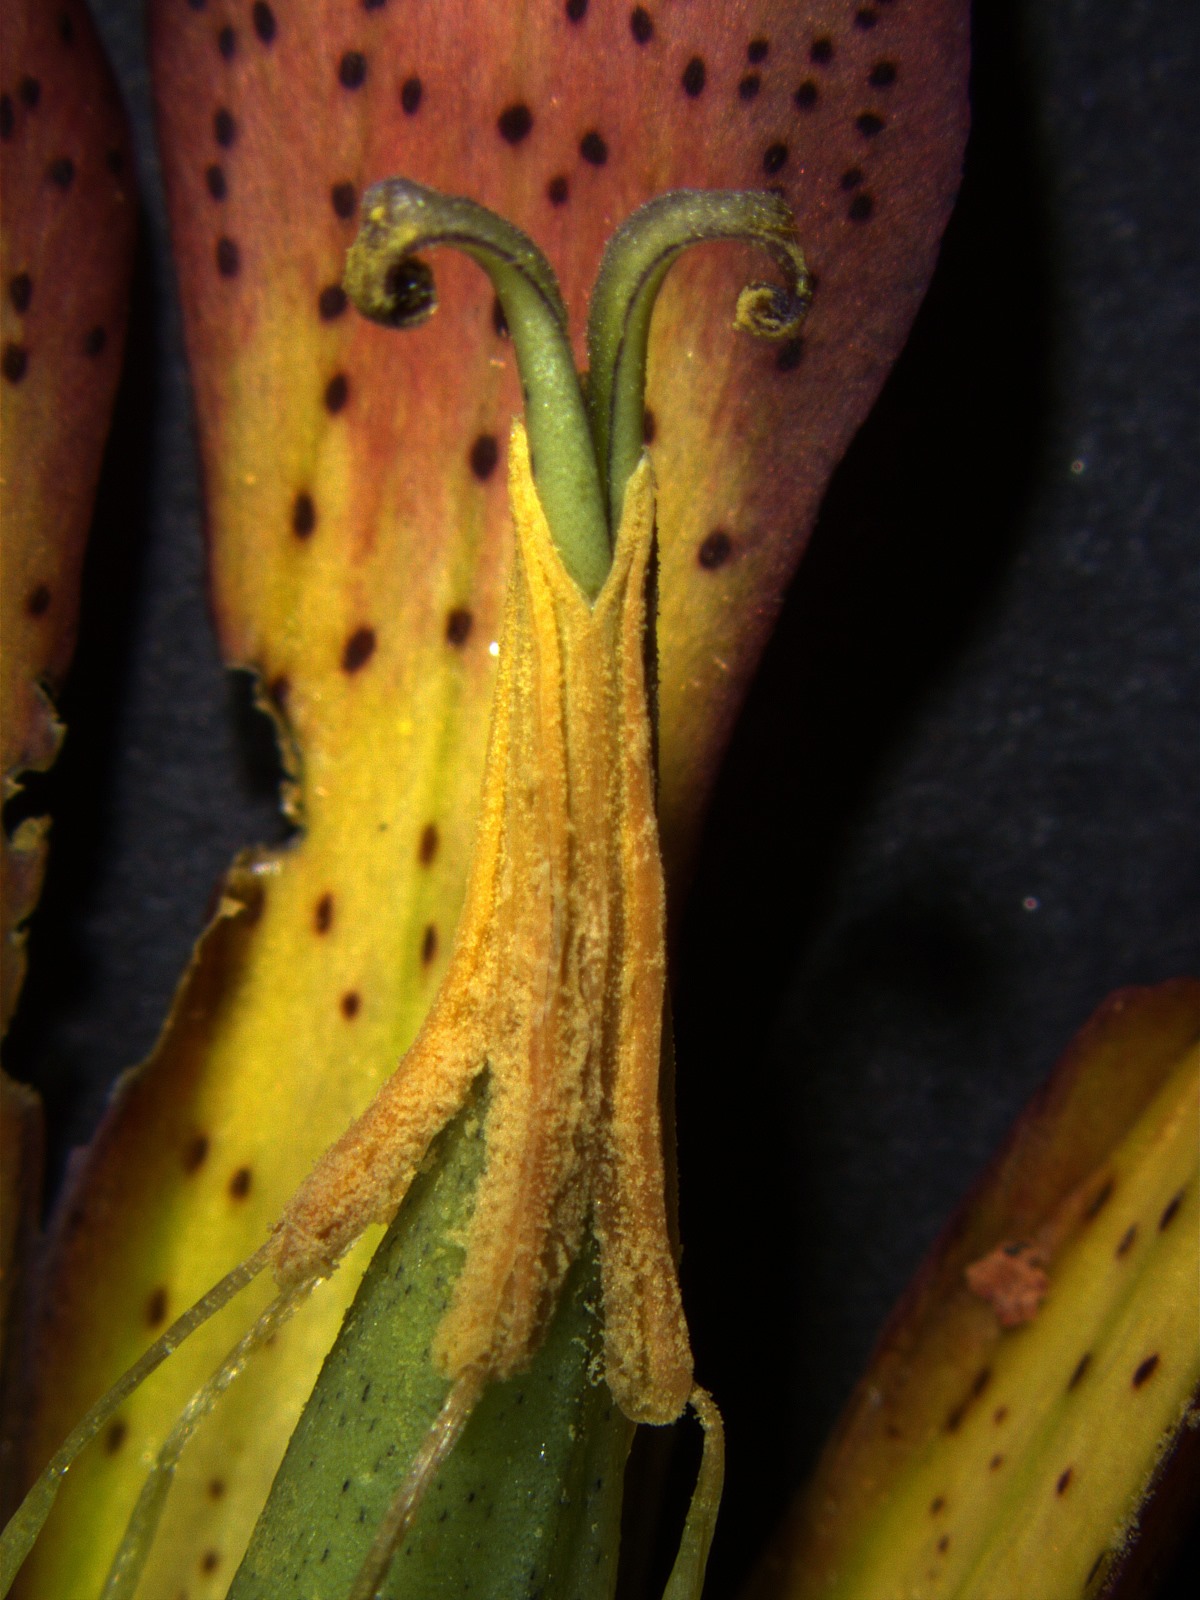 Prikaz zraslih prašnikih in venčnih listov pod lupo